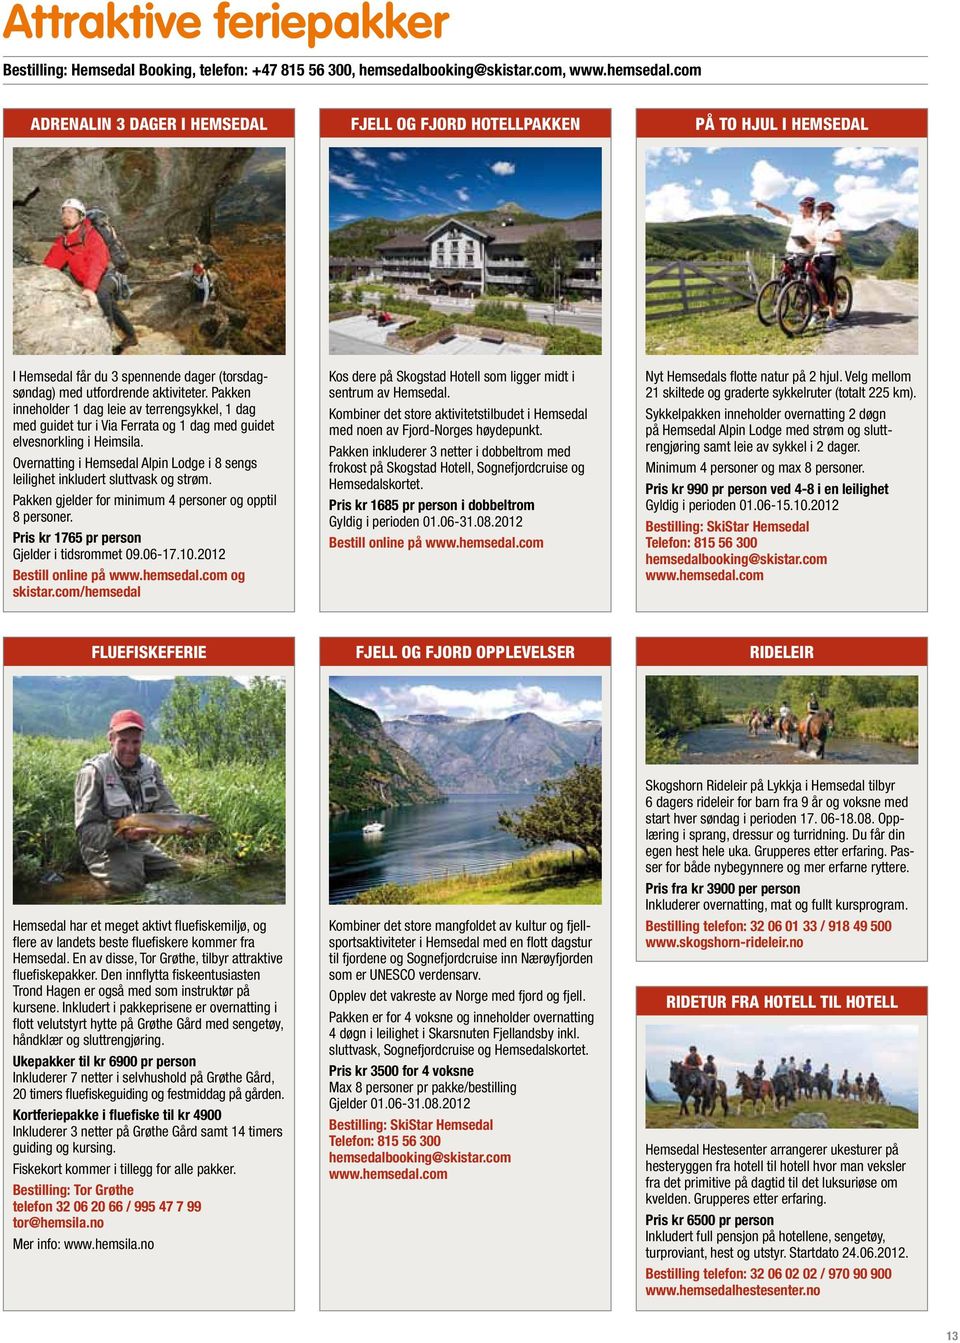 Pakken inneholder 1 dag leie av terrengsykkel, 1 dag med guidet tur i Via Ferrata og 1 dag med guidet elvesnorkling i Heimsila.